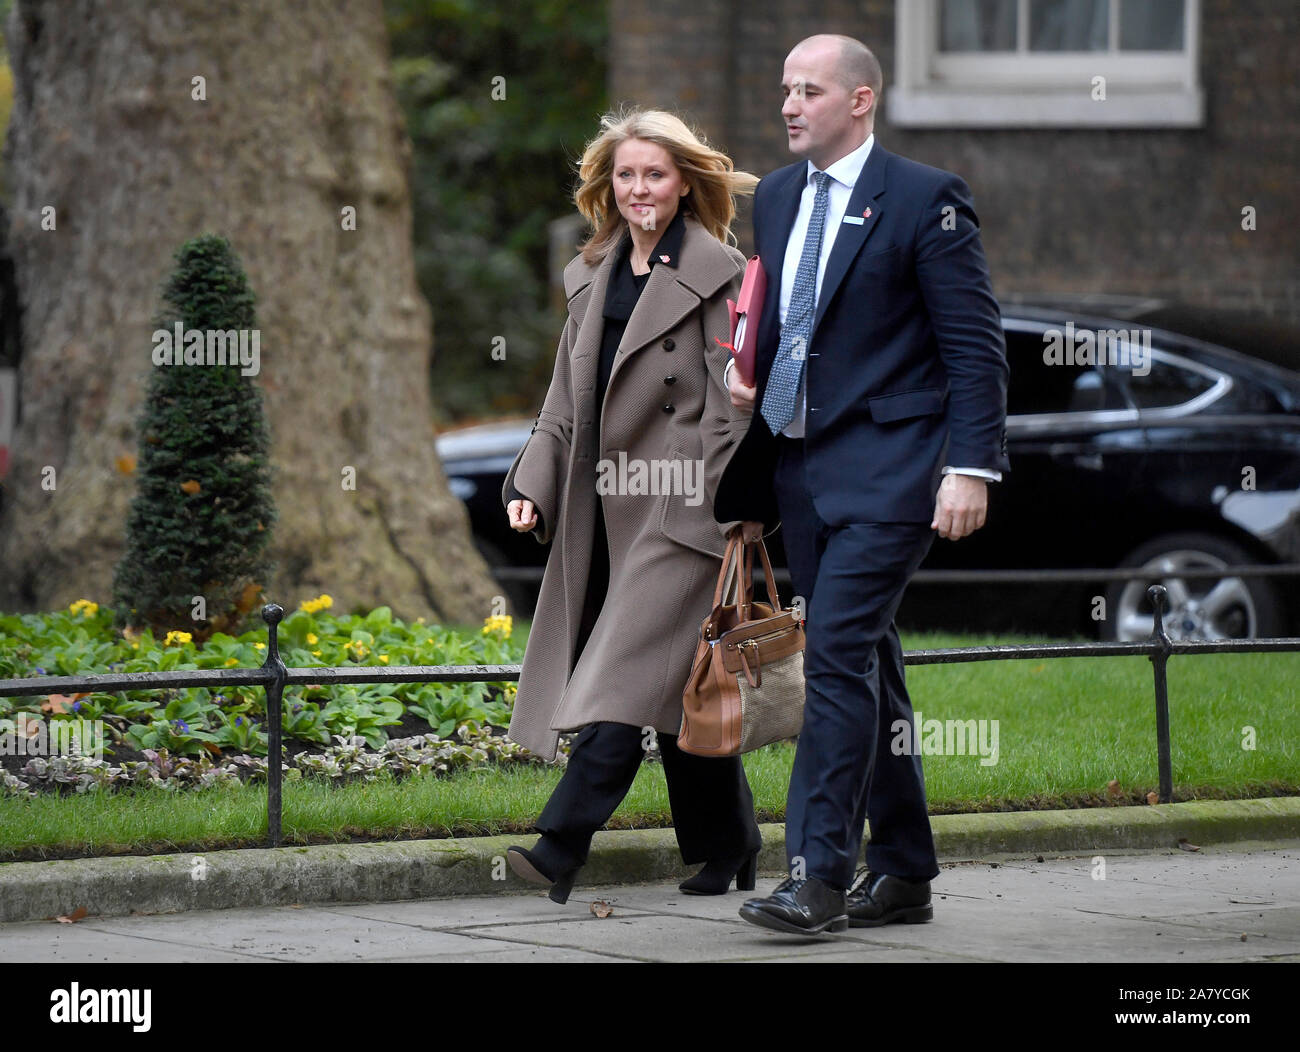 Ministre de l'administration centrale et la croissance locale Jake Berry et ministre d'État au logement Esther McVey arrivent pour une réunion du Cabinet à Downing Street, Londres. Banque D'Images